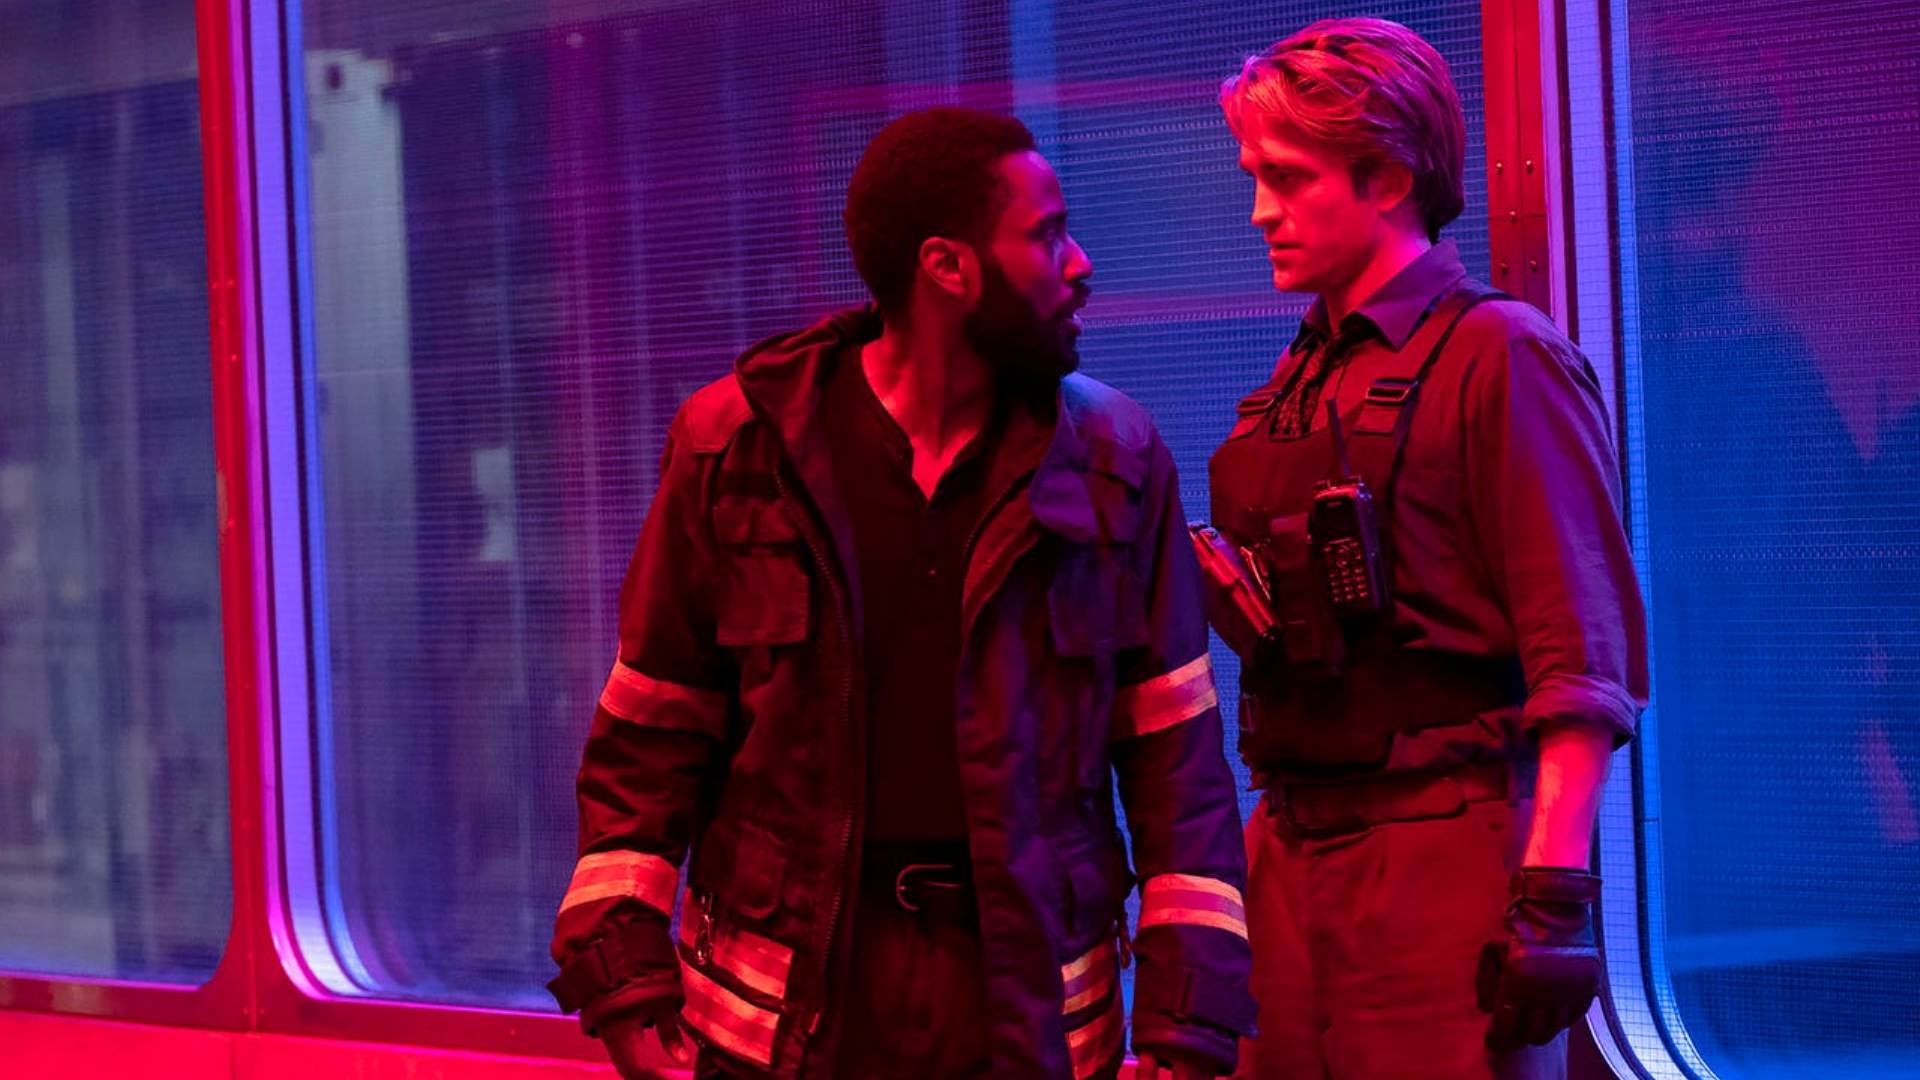 Tenet (16. července 2020): Nová sci-fi Christophera Nolana (Temný rytíř, Počátek) má být velkým „po-pandemickým“ comebackem hollywoodských filmů. Jak už je u Nolana zvykem, propagační kampaň stojí hlavně na utajení většiny příběhu.